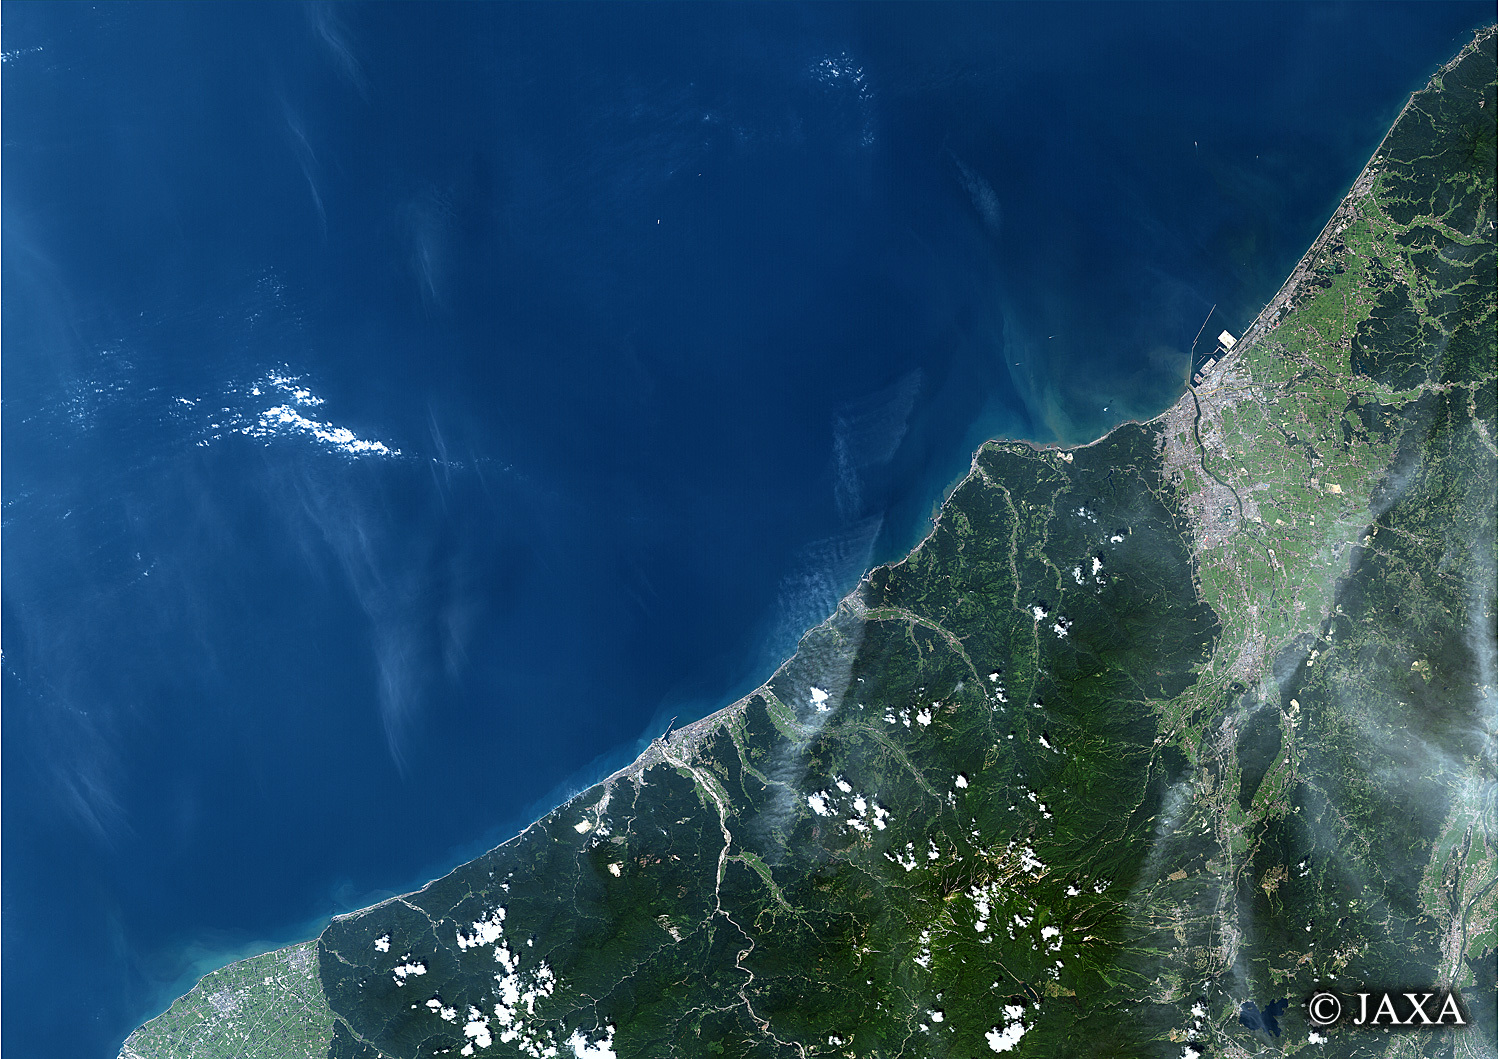 だいちから見た日本の都市 関川:衛星画像